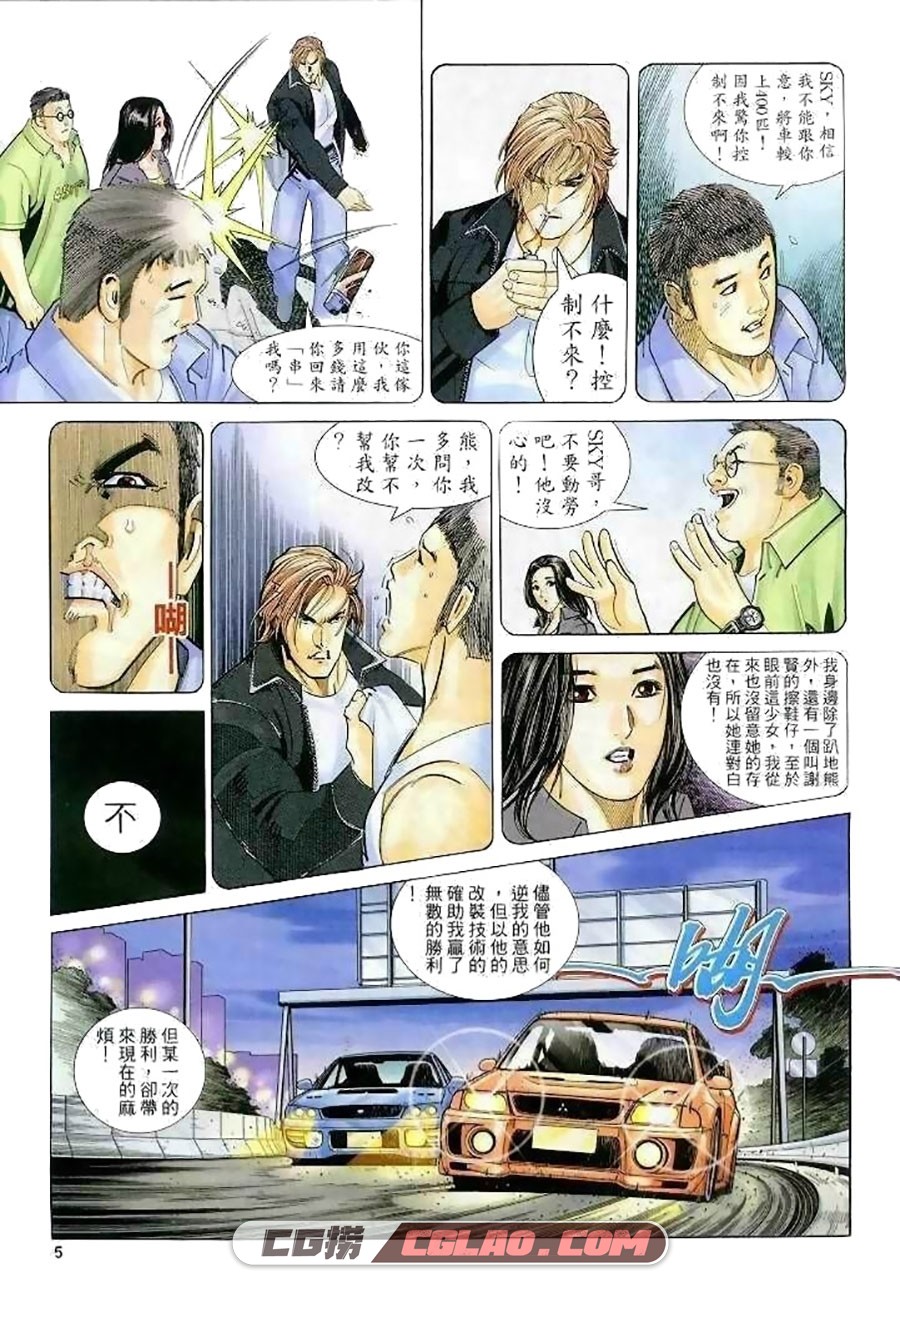 极速传说 马荣成 全一册 漫画全集下载 百度网盘,0005.jpg